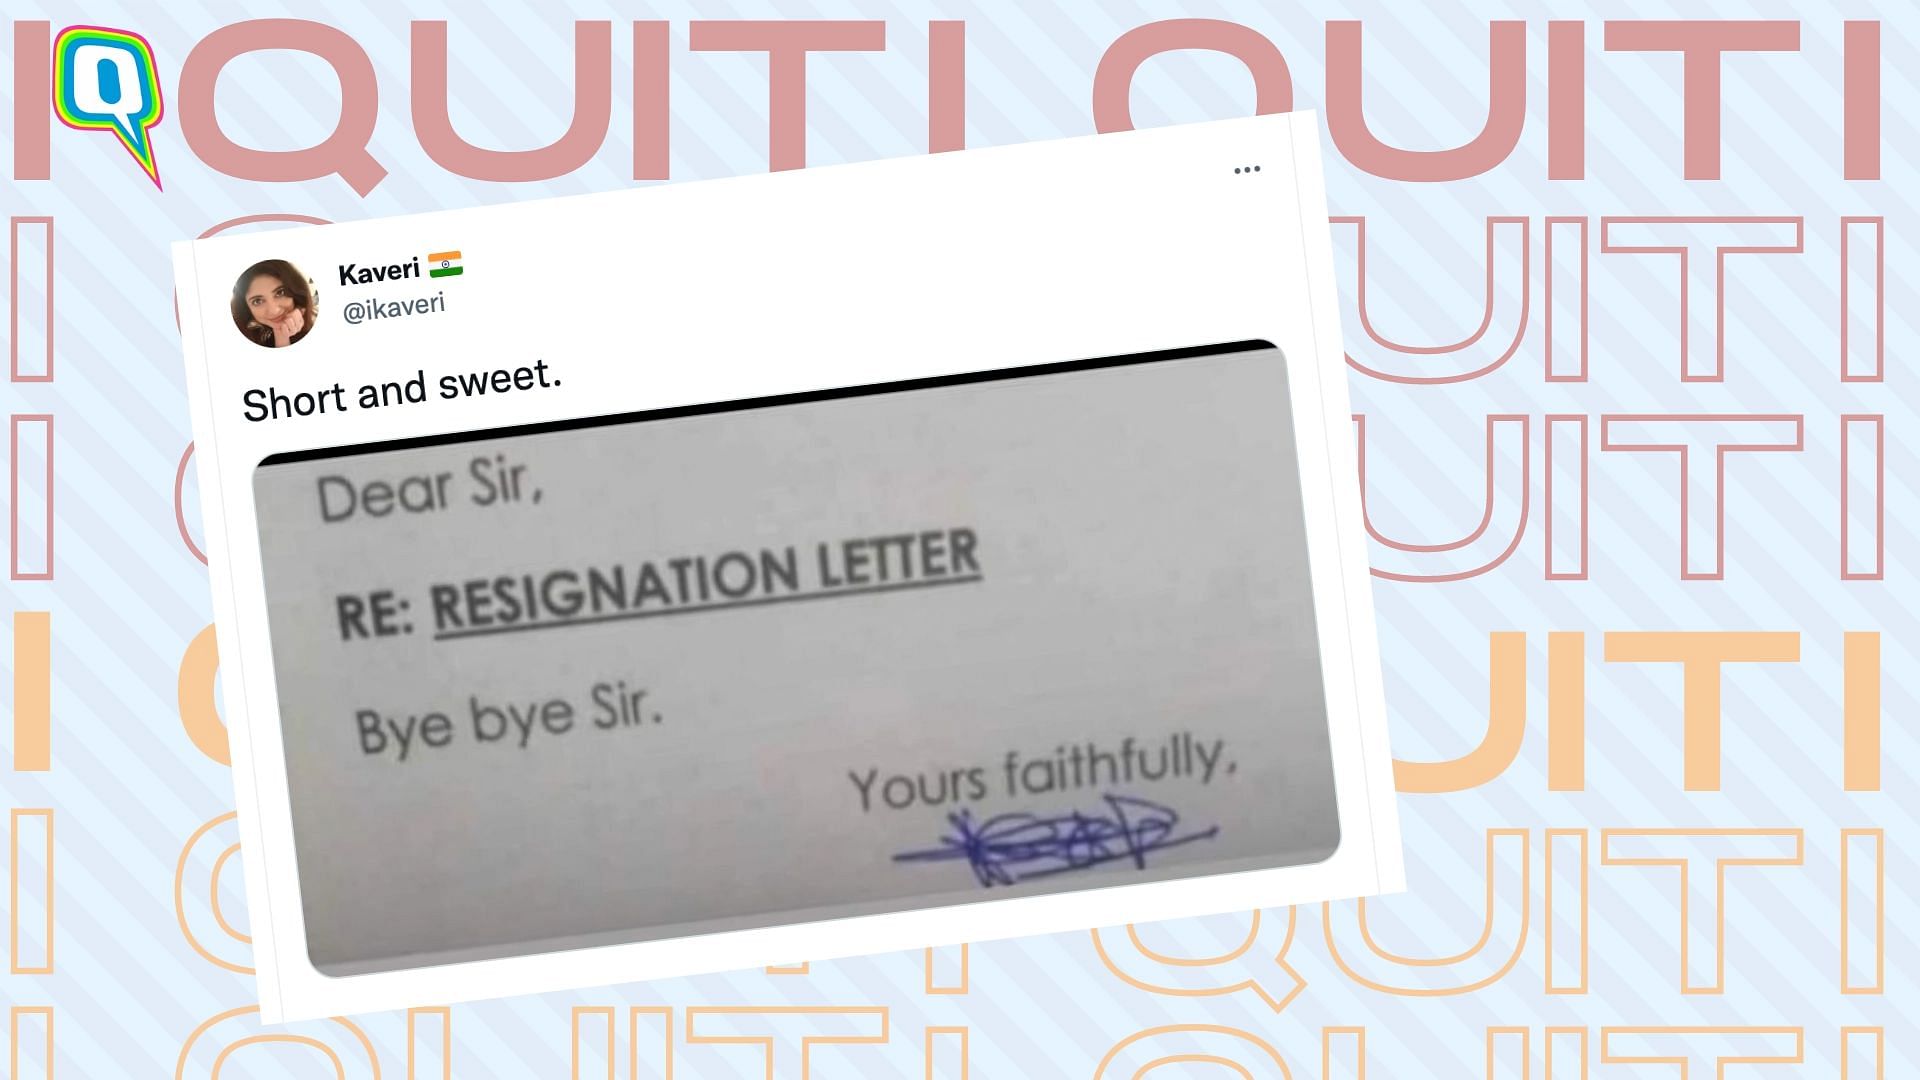 <div class="paragraphs"><p>Unique resignation letter goes viral on Twitter</p></div>